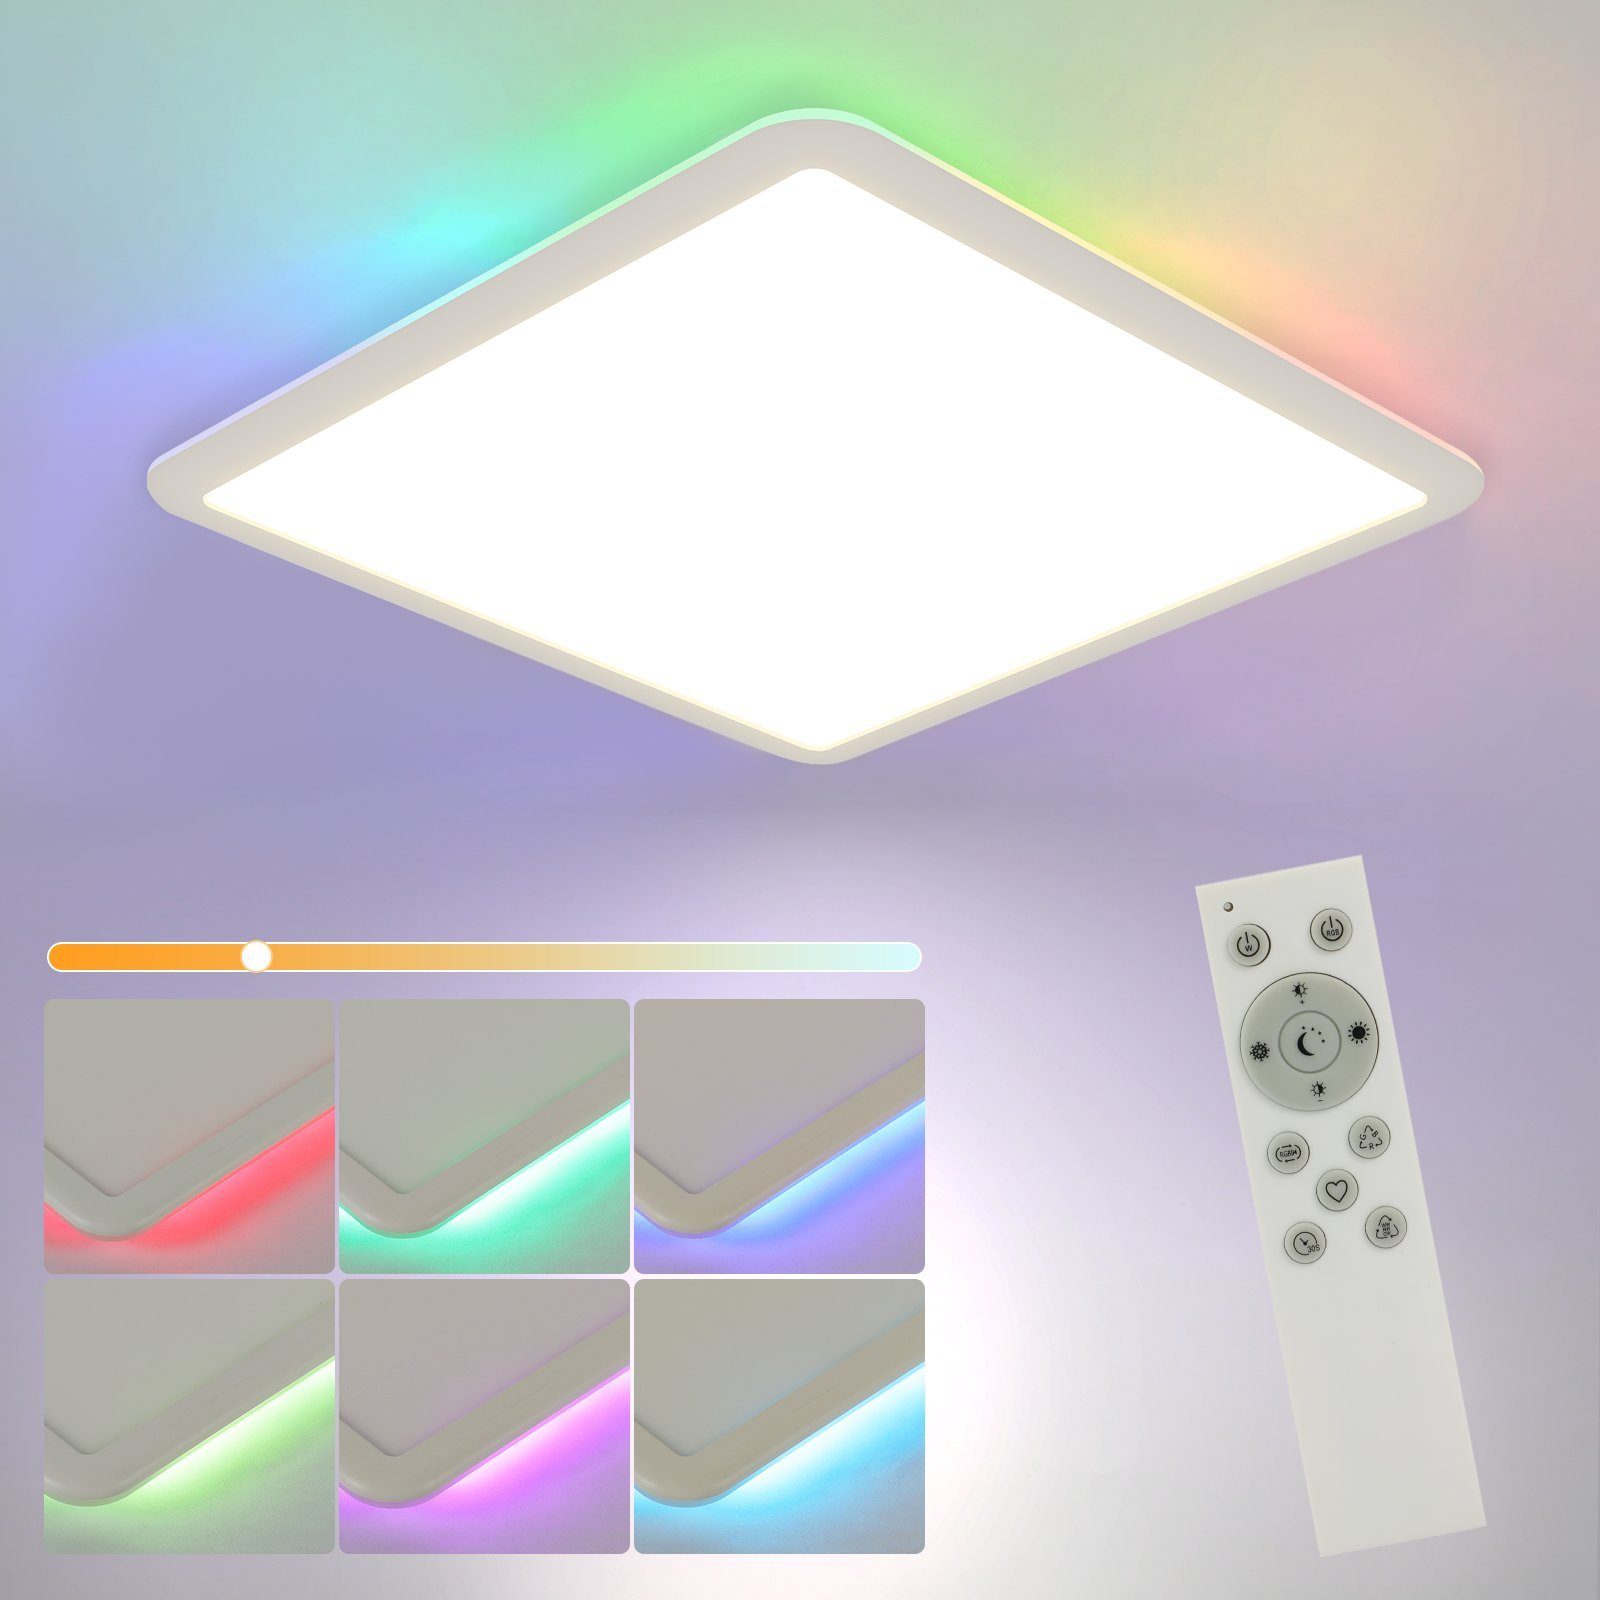 Nettlife LED Panel Deckenleuchte Dimmbar mit Fernbedienung 24W IP44, RGB Farbwechsel,Dimmbar, LED fest integriert, Warmweiß, Neutralweiß, Kaltesweiß, für Schlafzimmer Kinderzimmer Küche Wohnzimmer